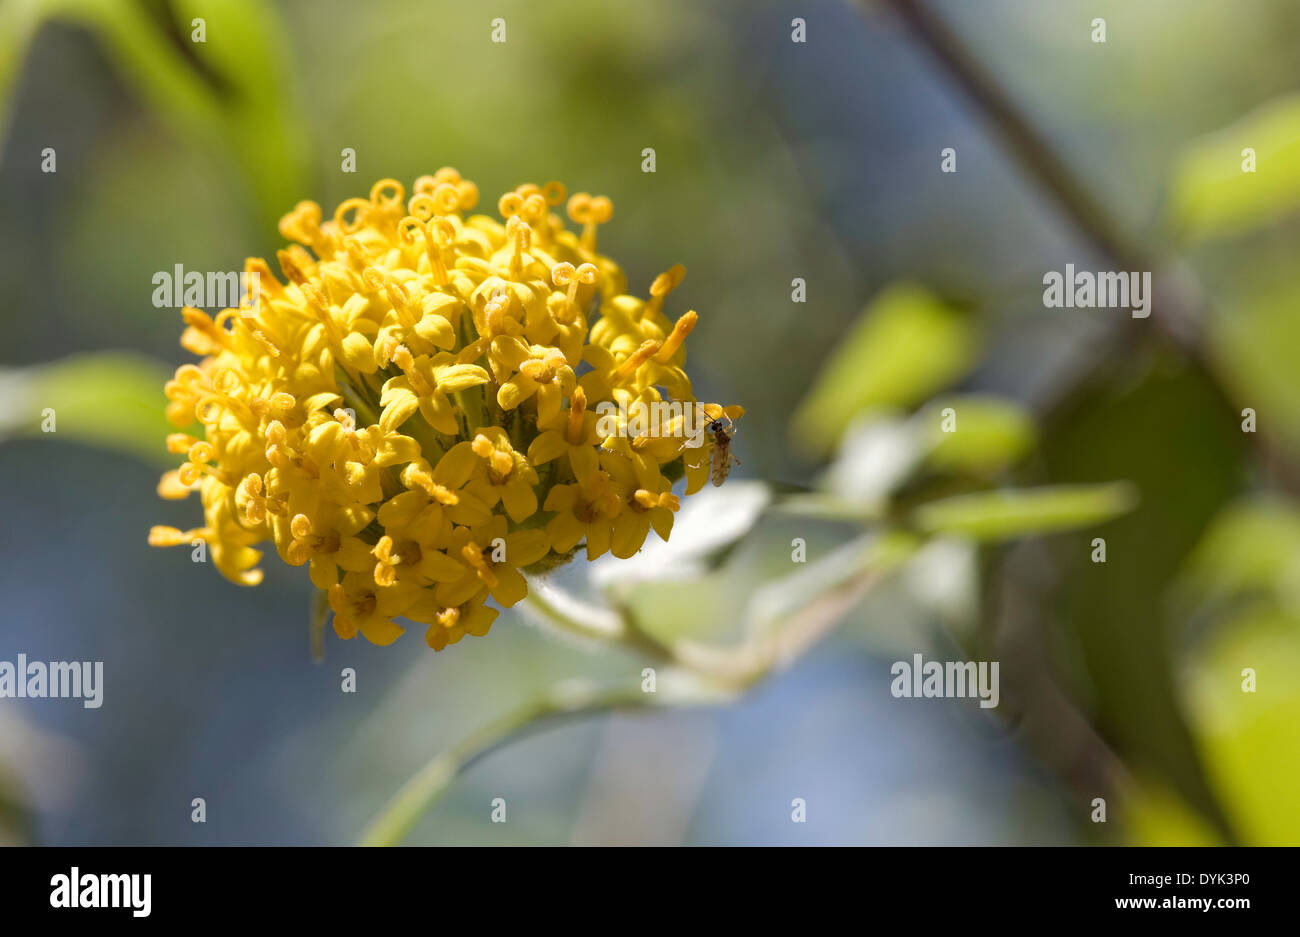 Bug on Yellow Flowers Stock Photo